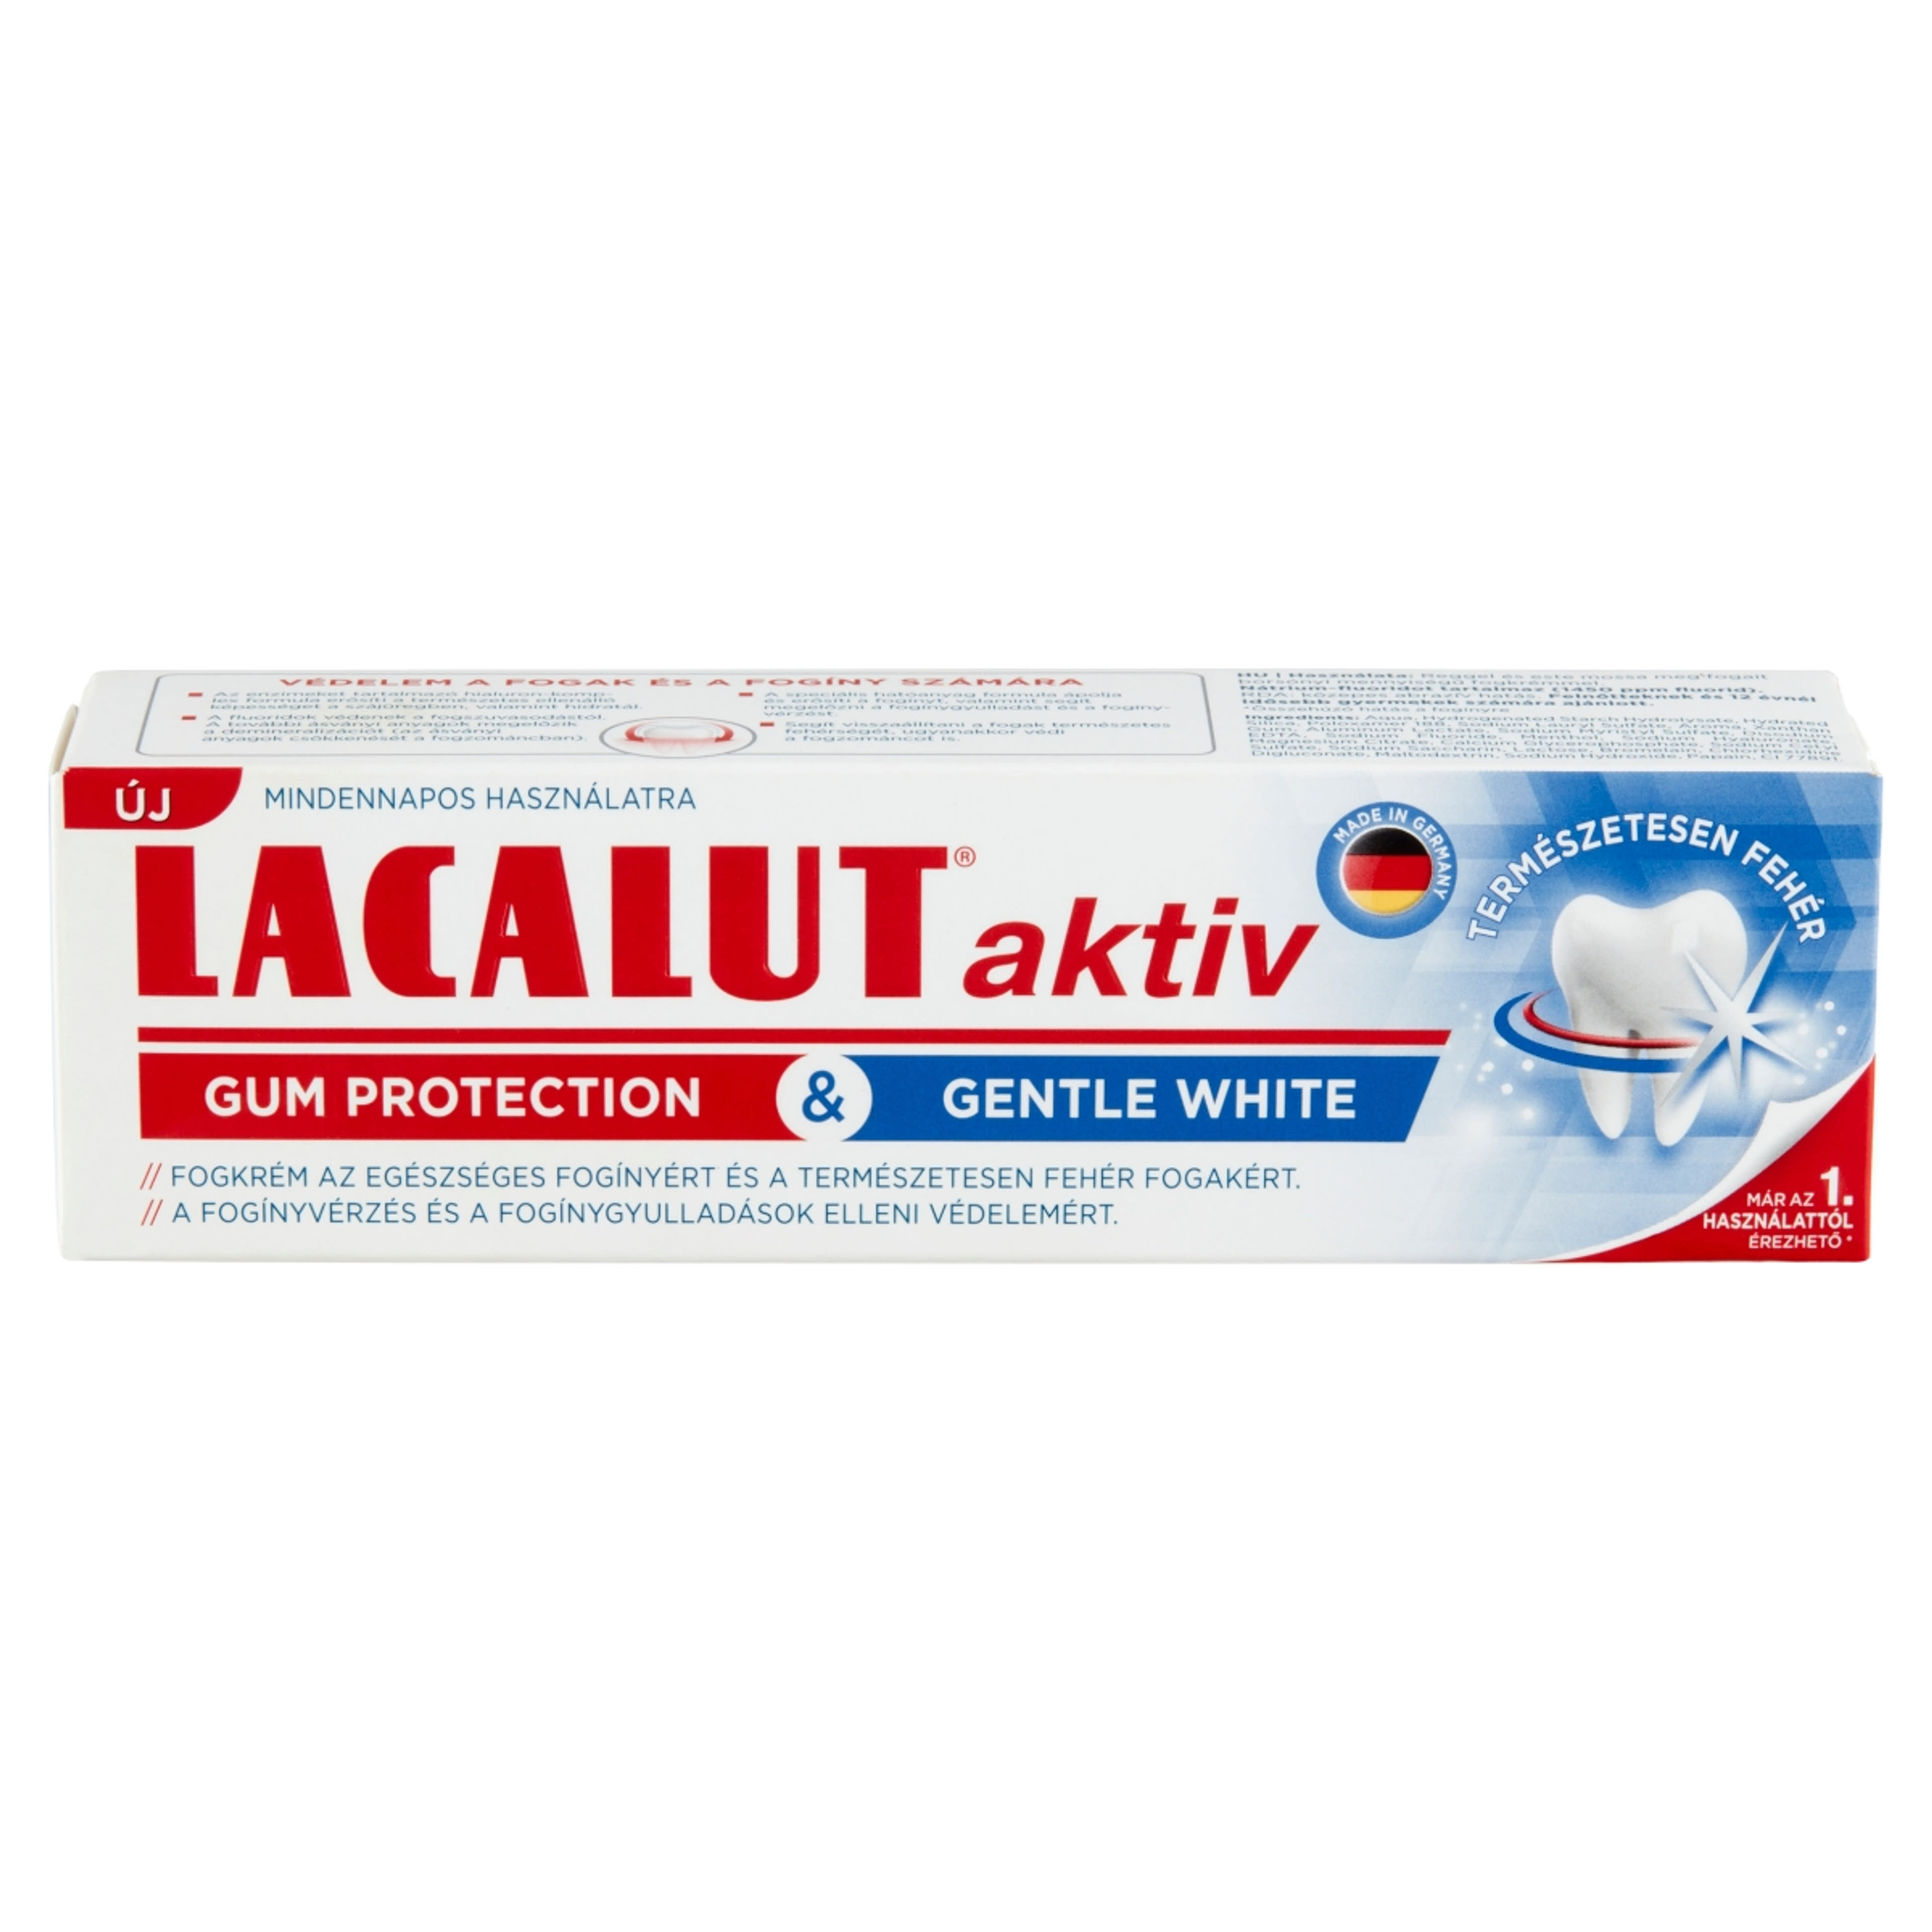 Lacalut Aktiv Gum Protection & Gentle White fogkrém - 75 ml-2